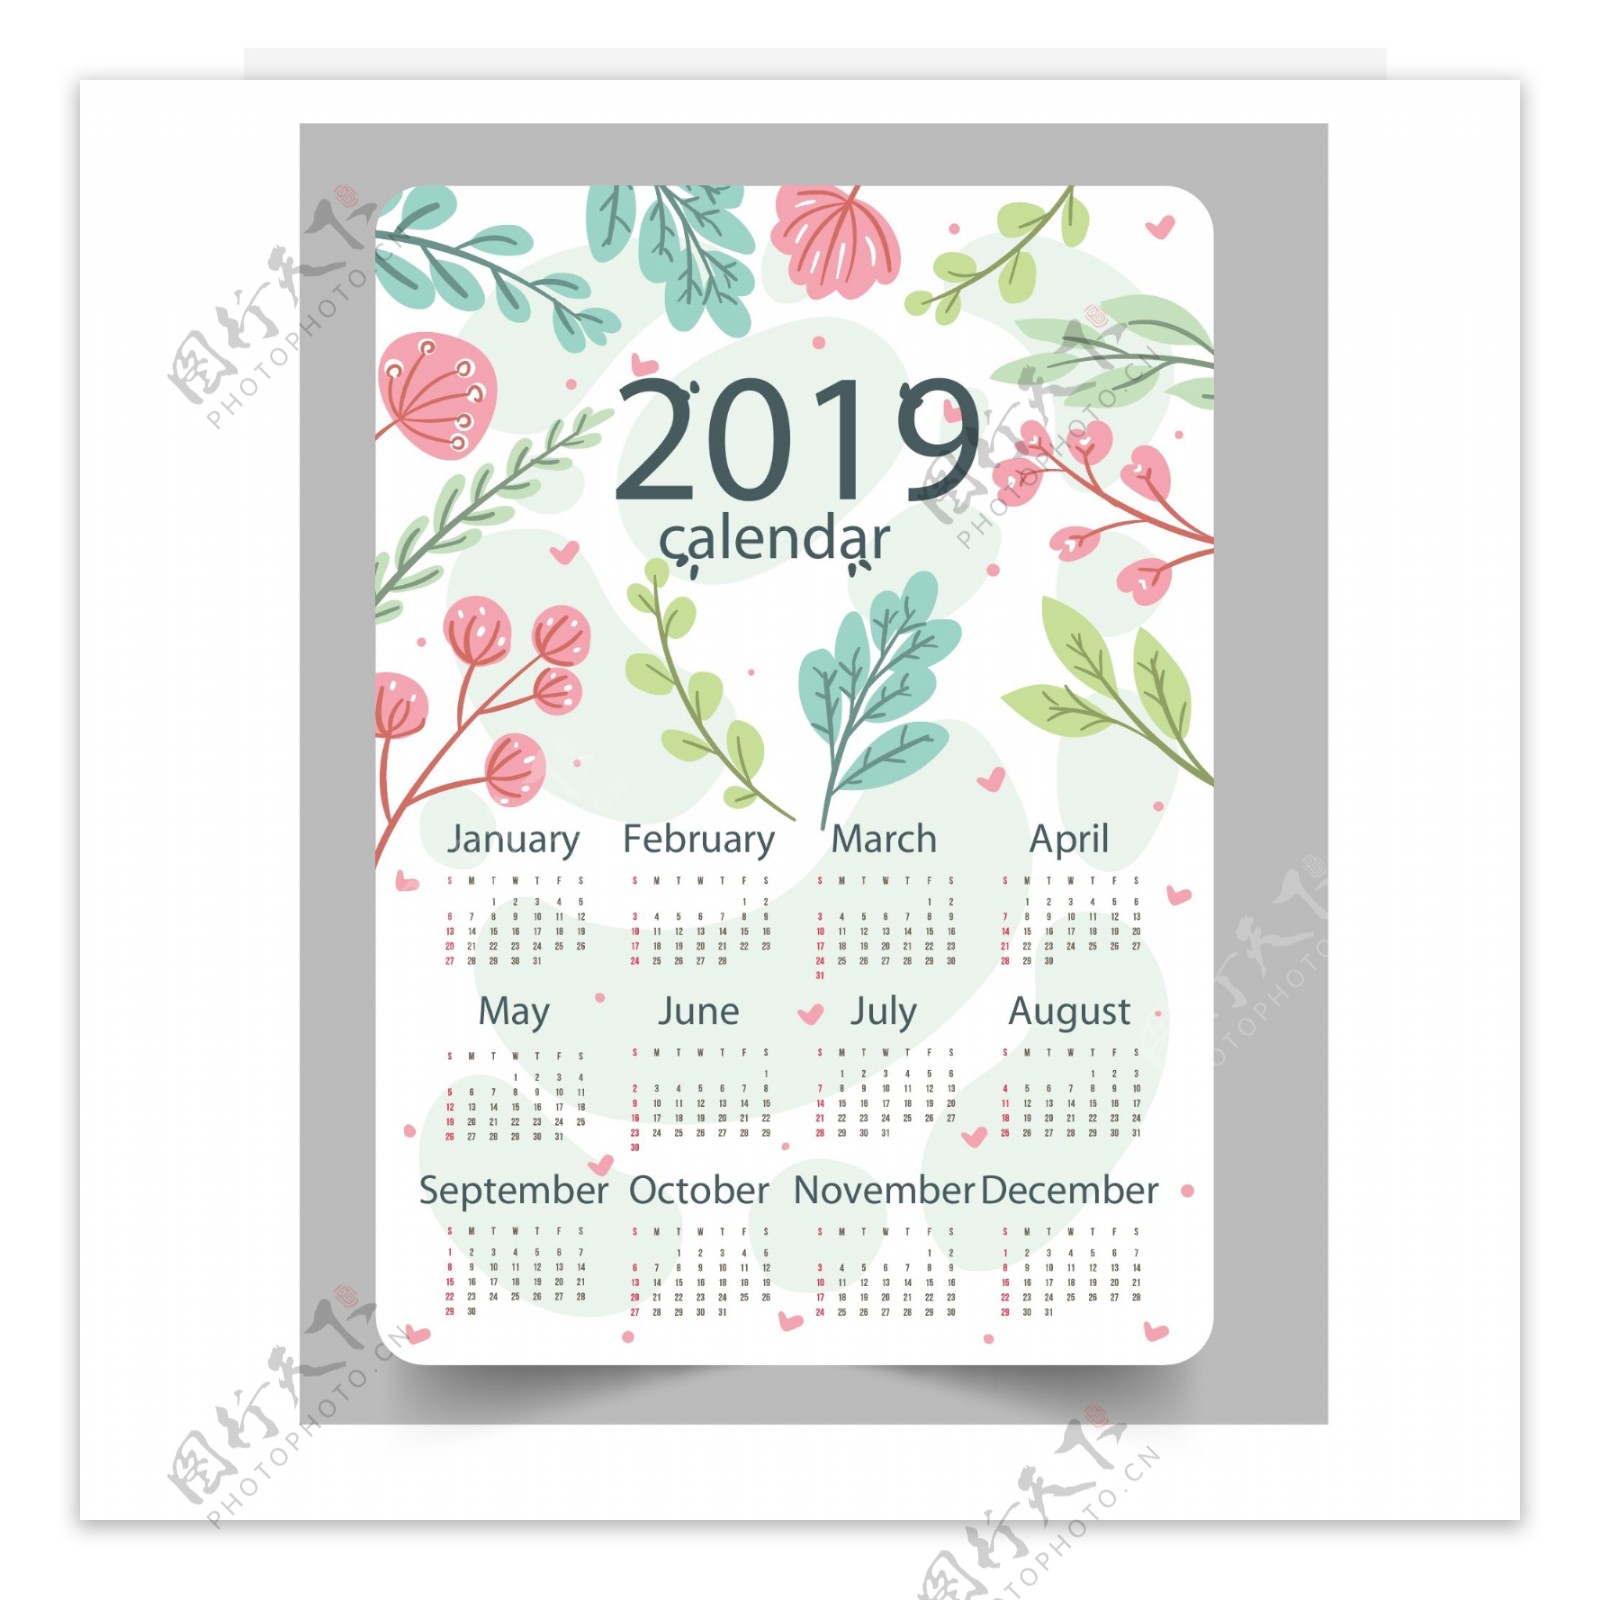 2019年彩绘花卉和树叶年历